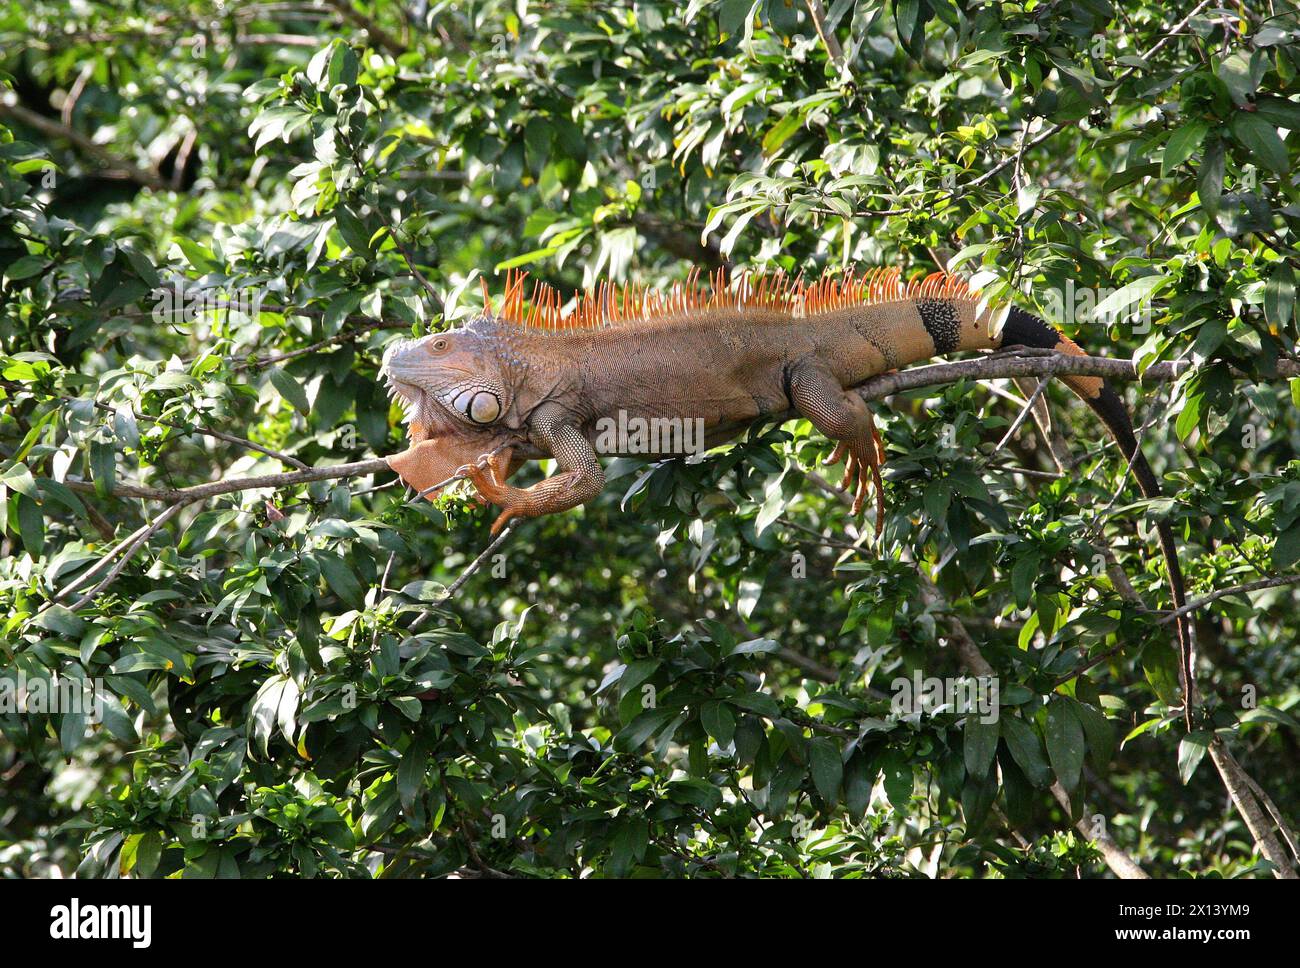 Grüner Leguan, Iguana Leguan, sitzt auf einem Baum. Tortuguero, Costa Rica, Mittelamerika. Stockfoto